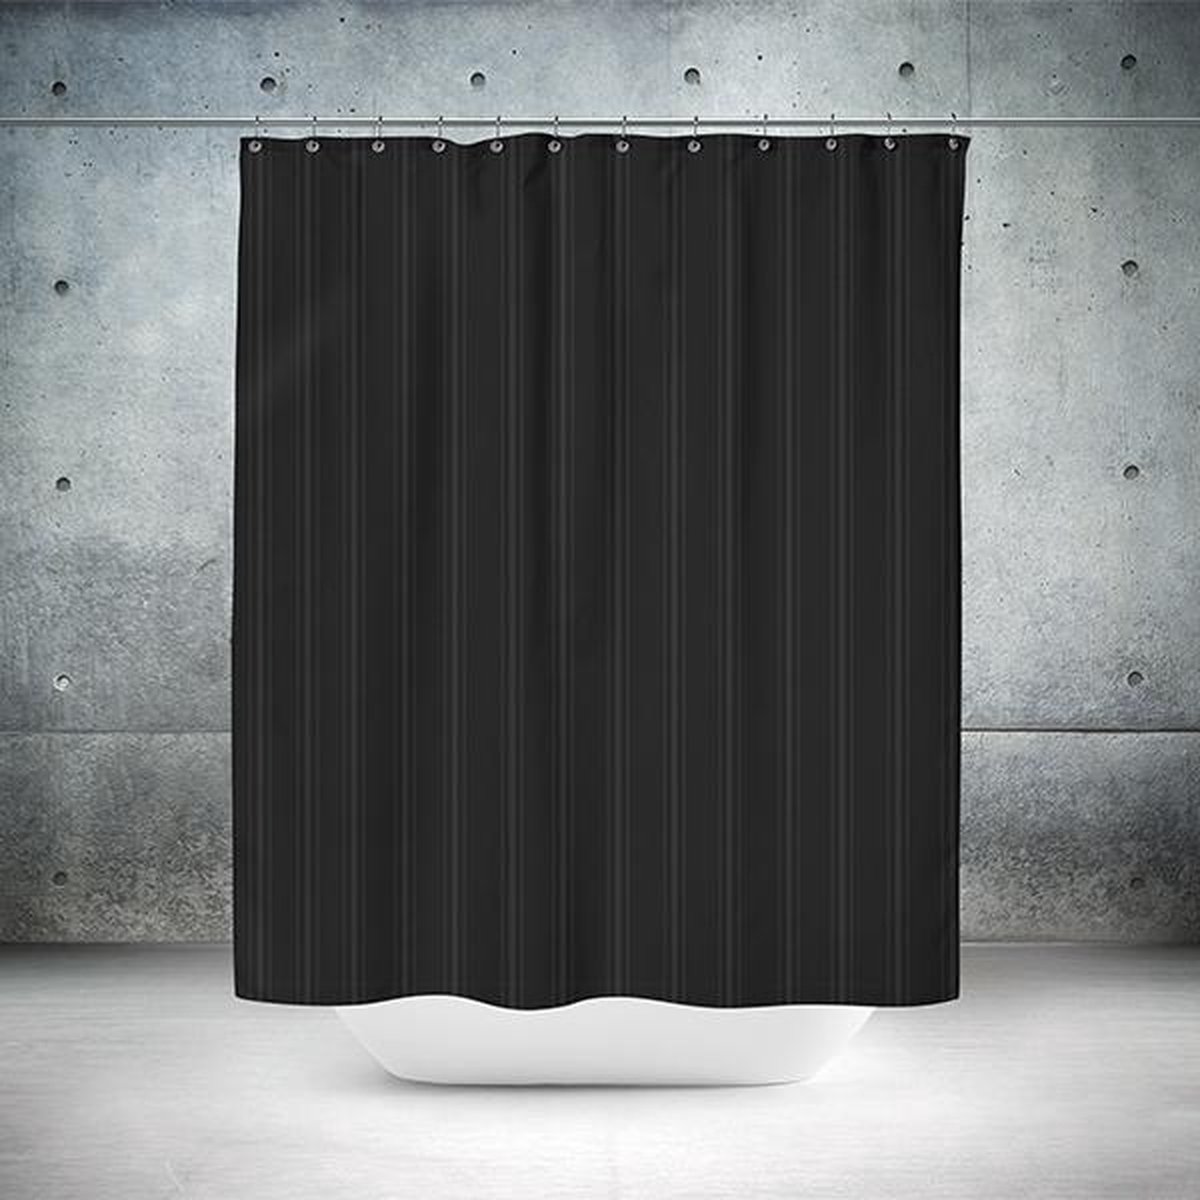 Roomture - douchegordijn - Classical black - 120 x 200